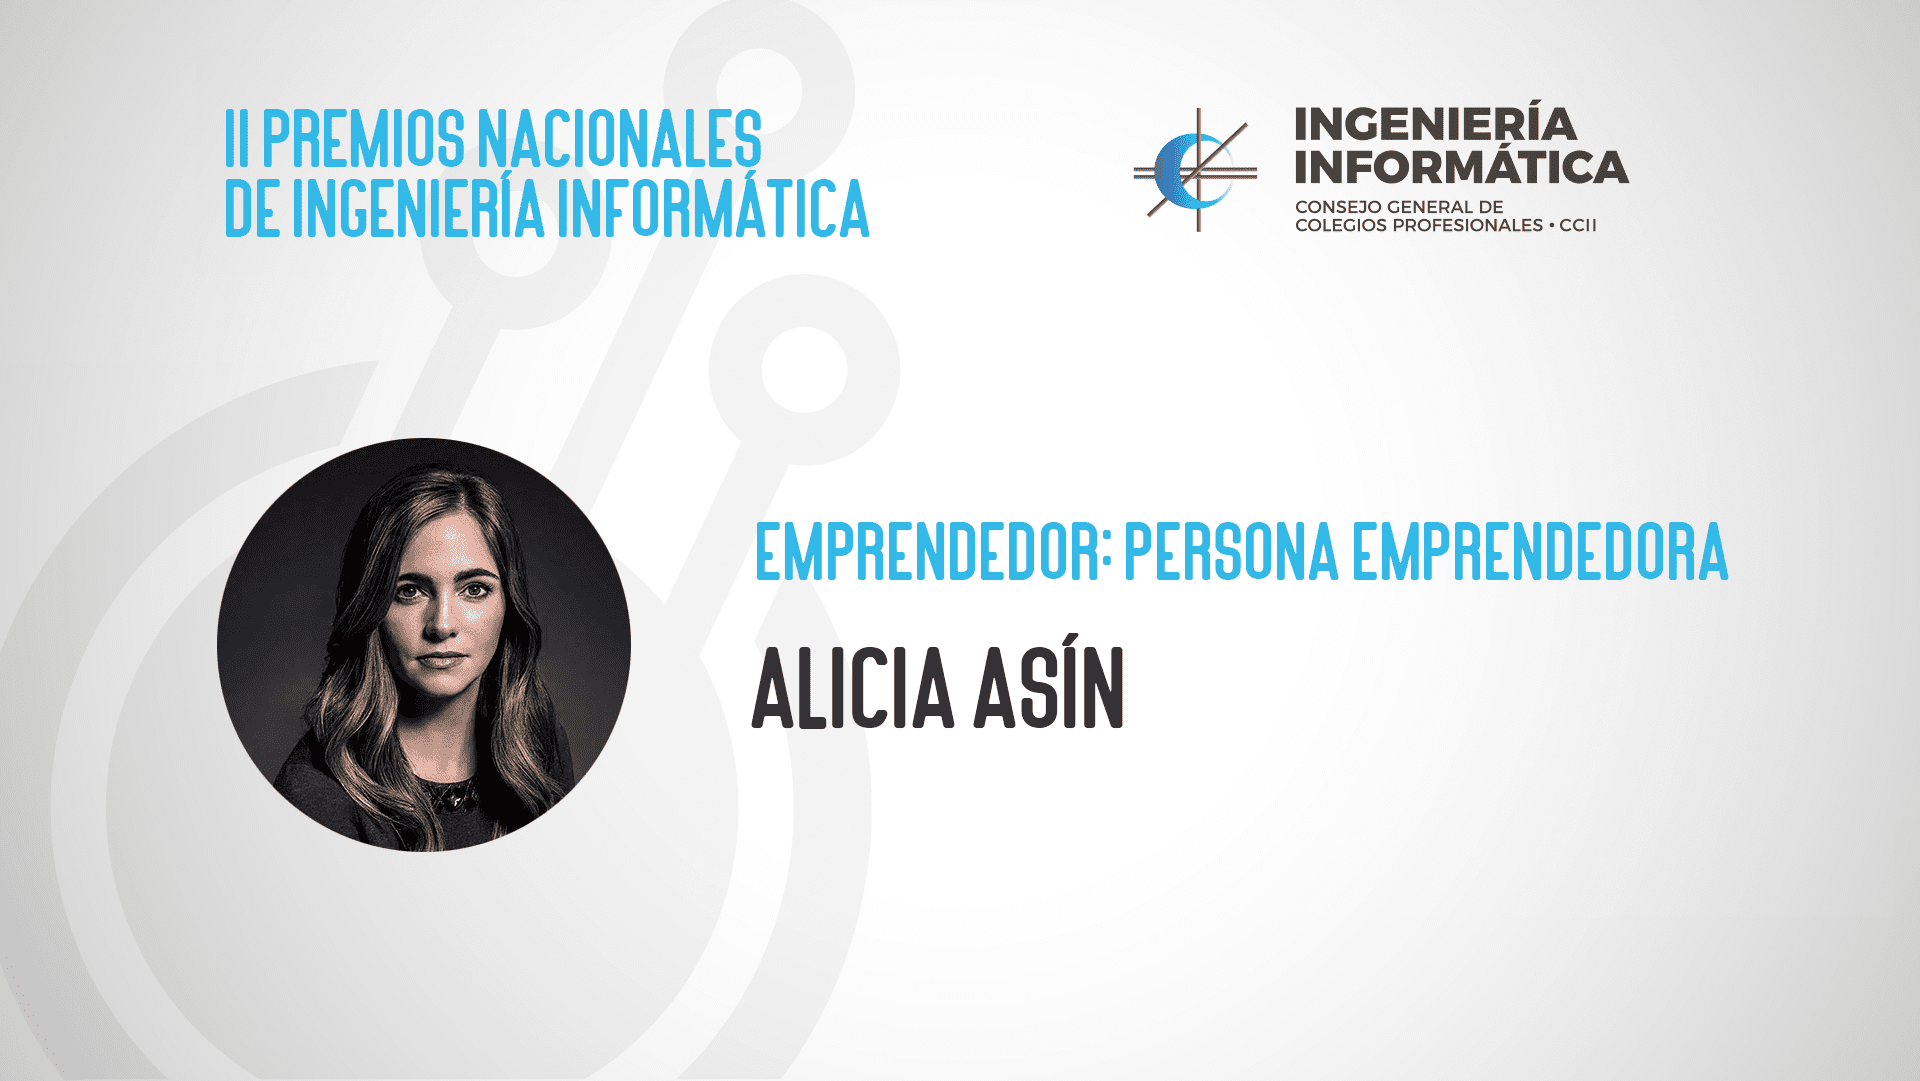 Nuestras socias son noticia: ALICIA ASIN, Premio Nacional de Ingeniería Informática.